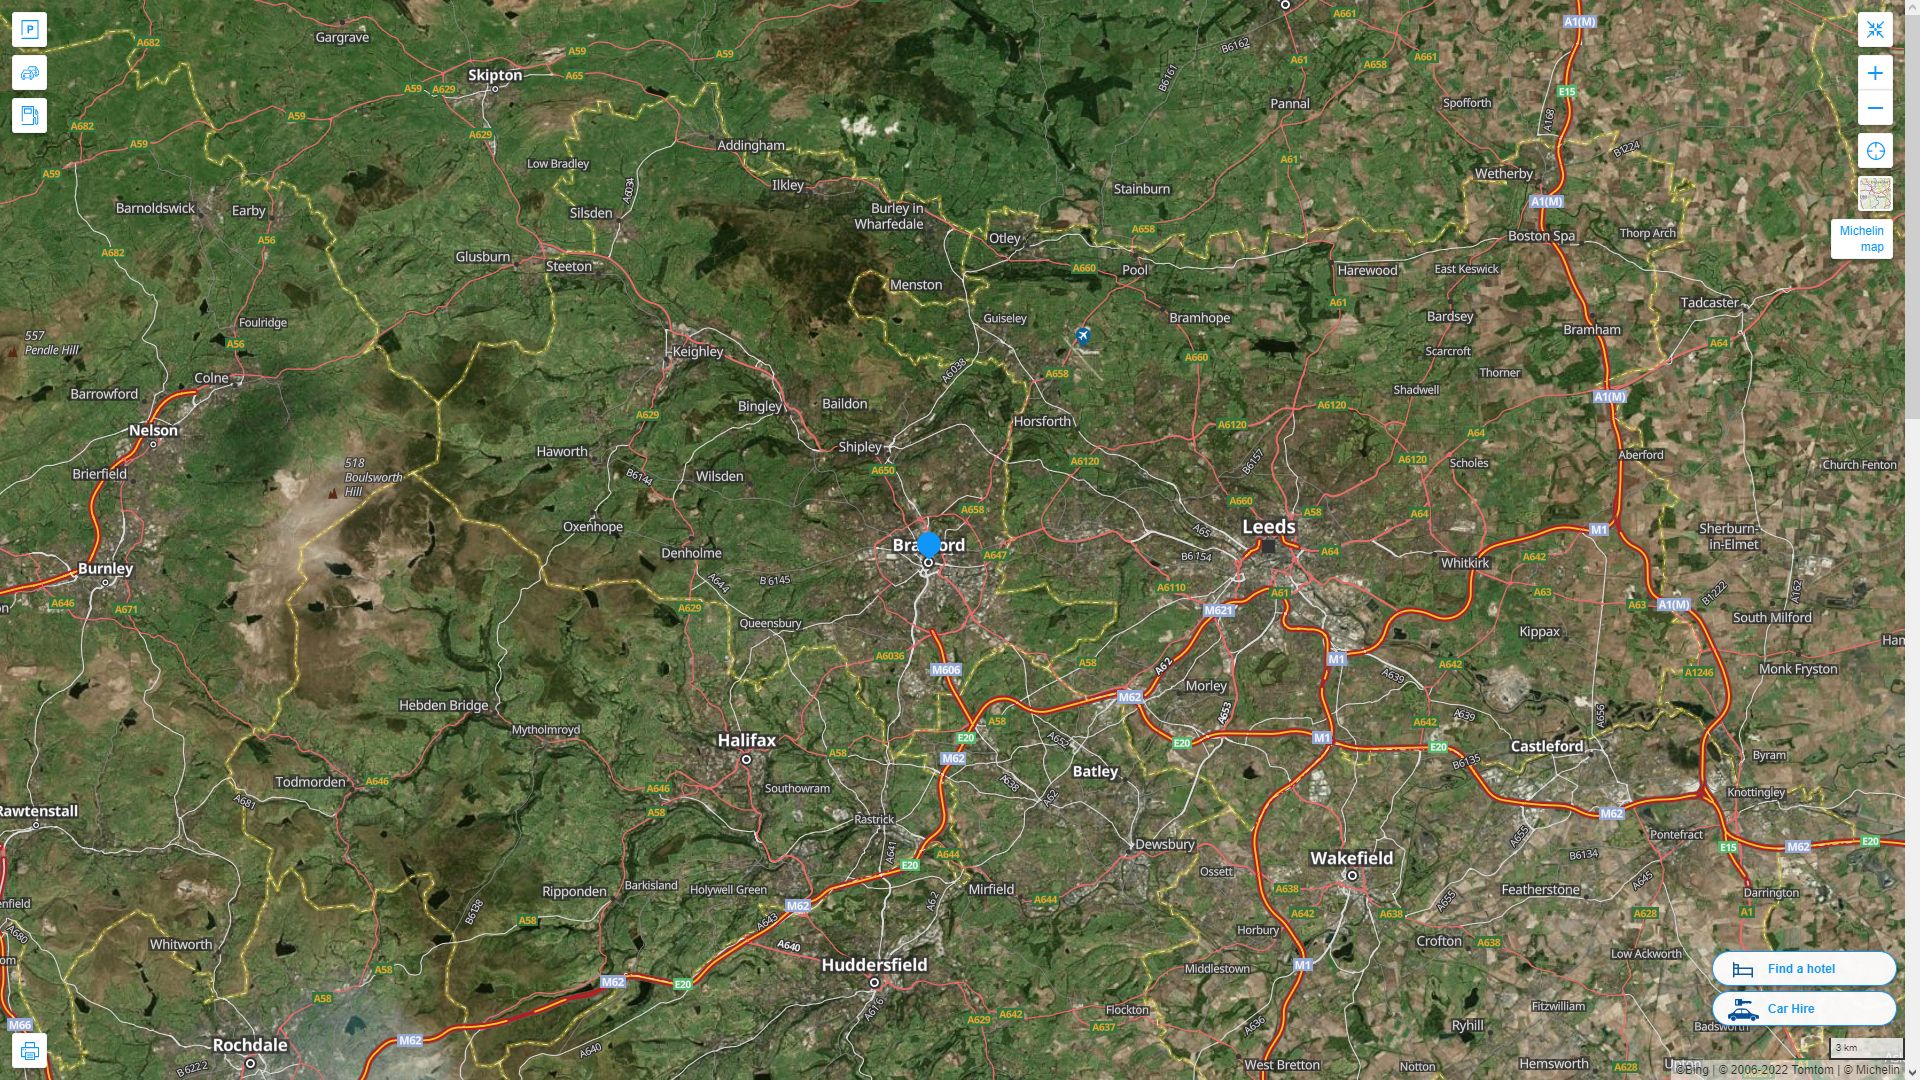 Bradford Royaume Uni Autoroute et carte routiere avec vue satellite